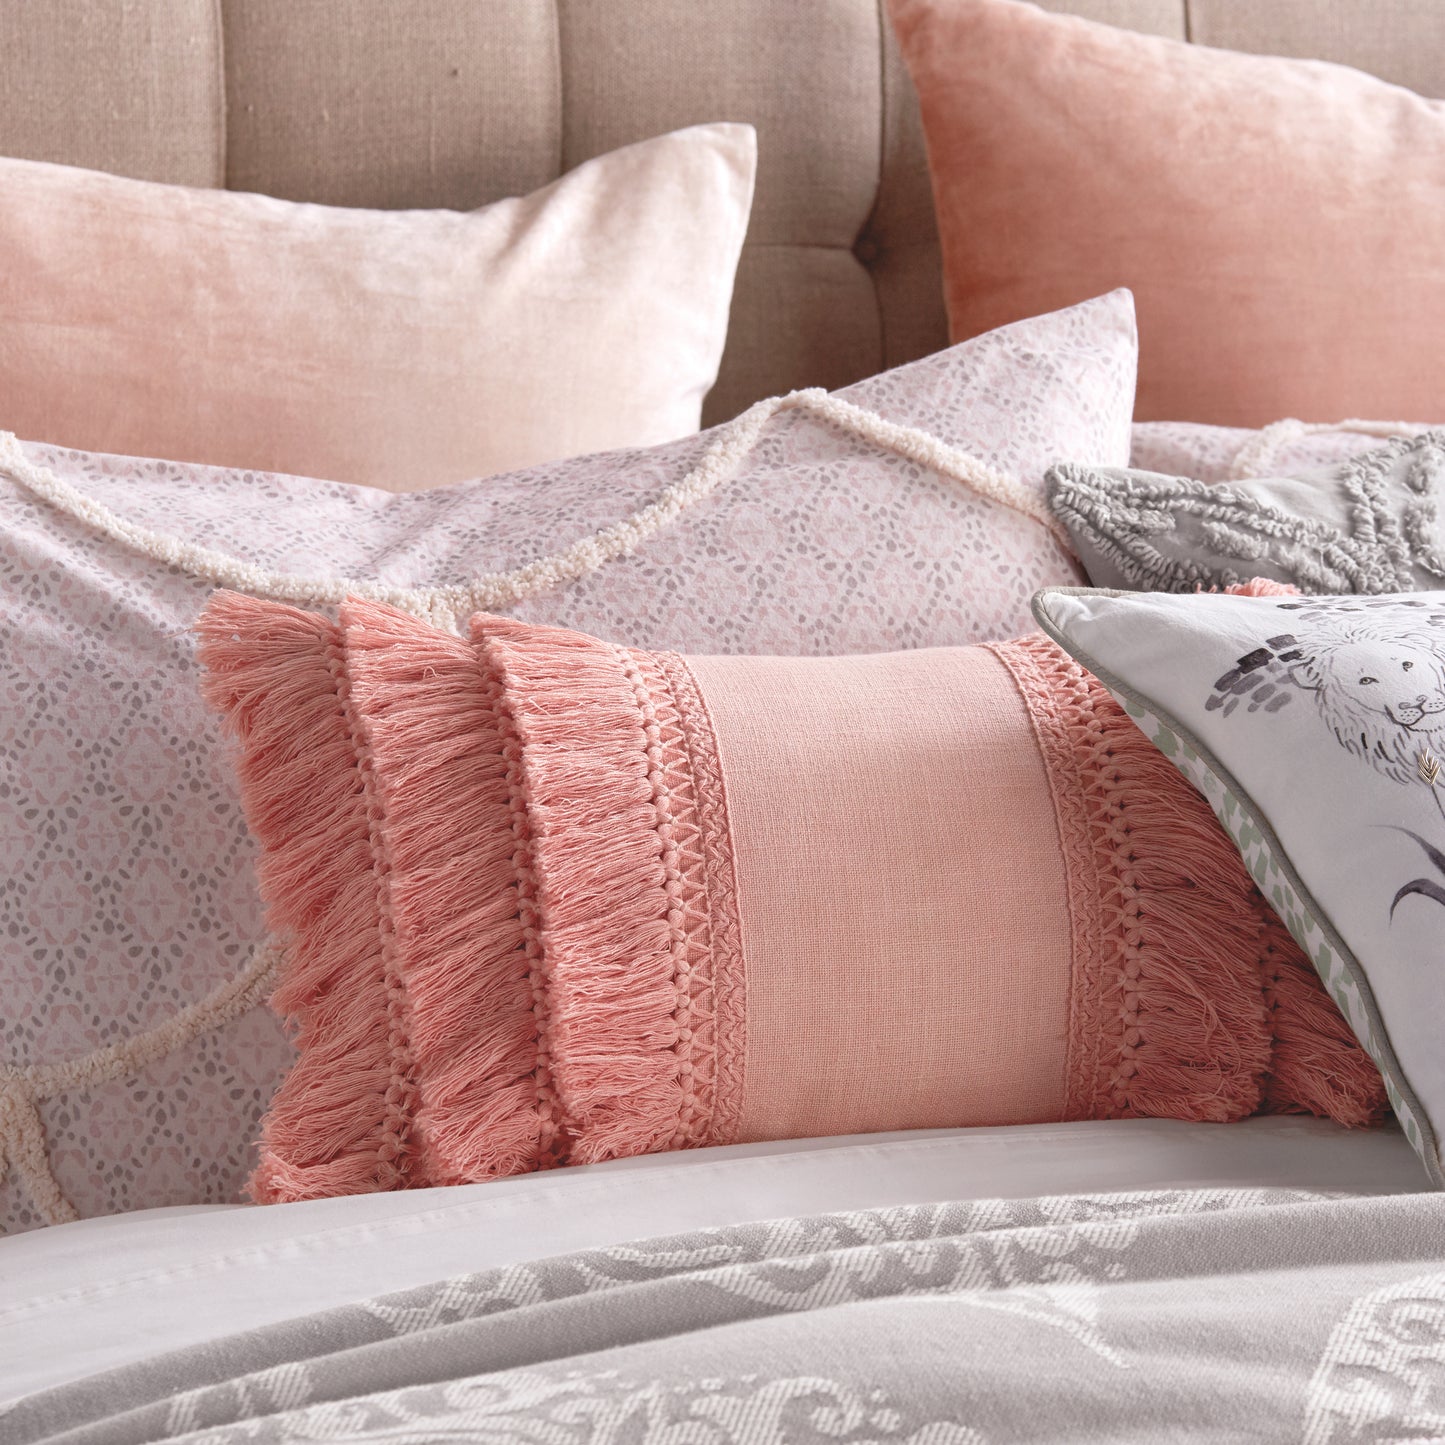 Peri Home Fringe Decorative Pillow blush